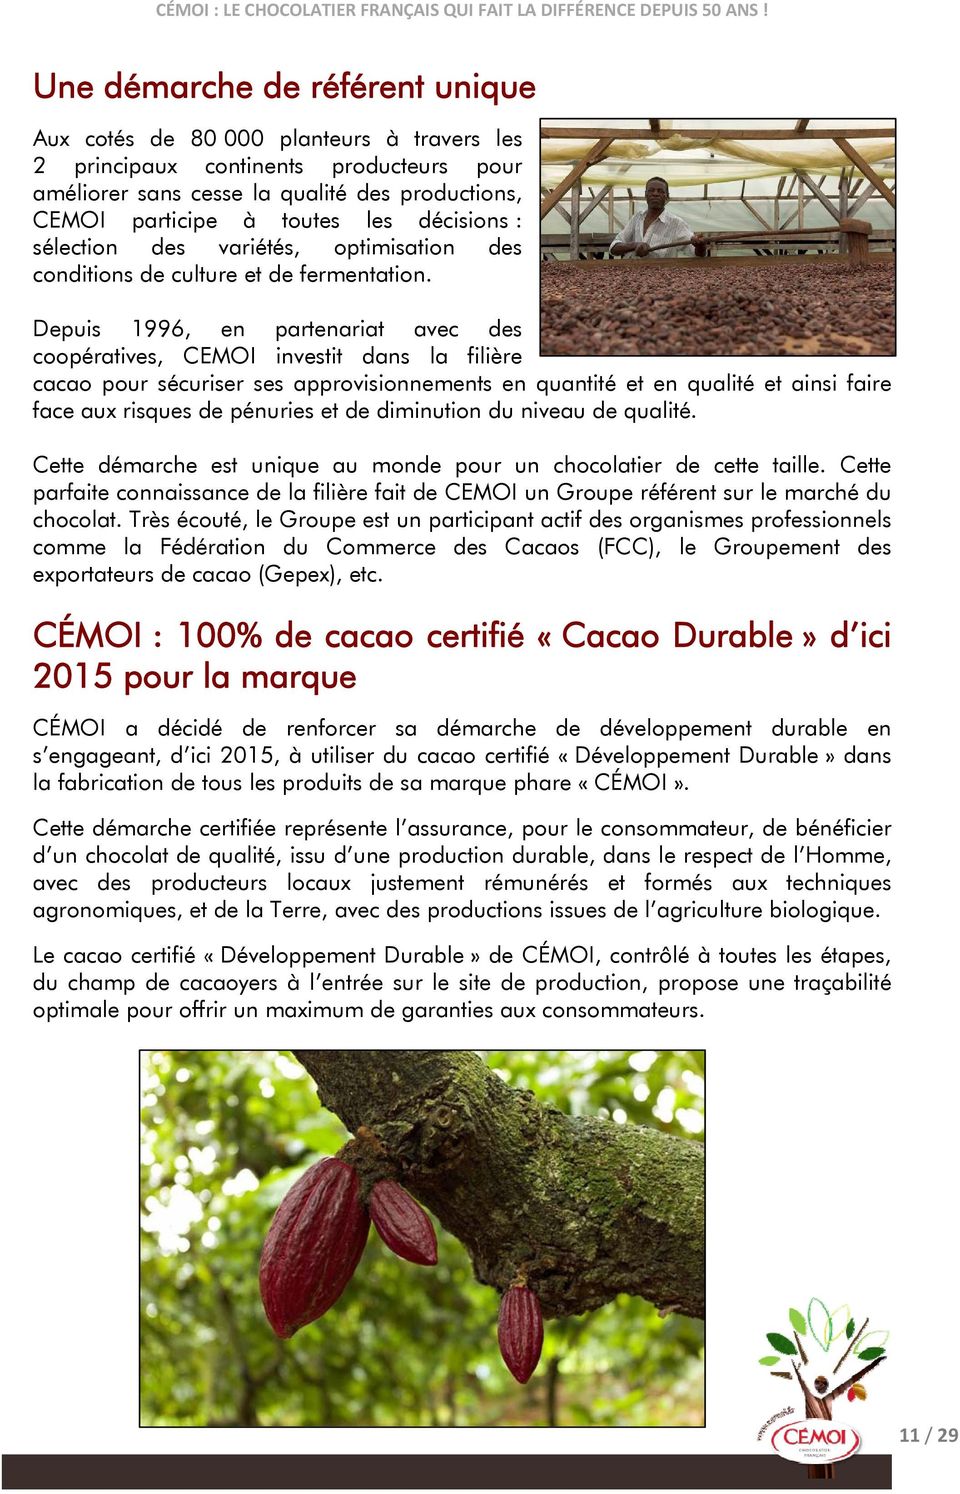 Depuis 1996, en partenariat avec des coopératives, CEMOI investit dans la filière cacao pour sécuriser ses approvisionnements en quantité et en qualité et ainsi faire face aux risques de pénuries et